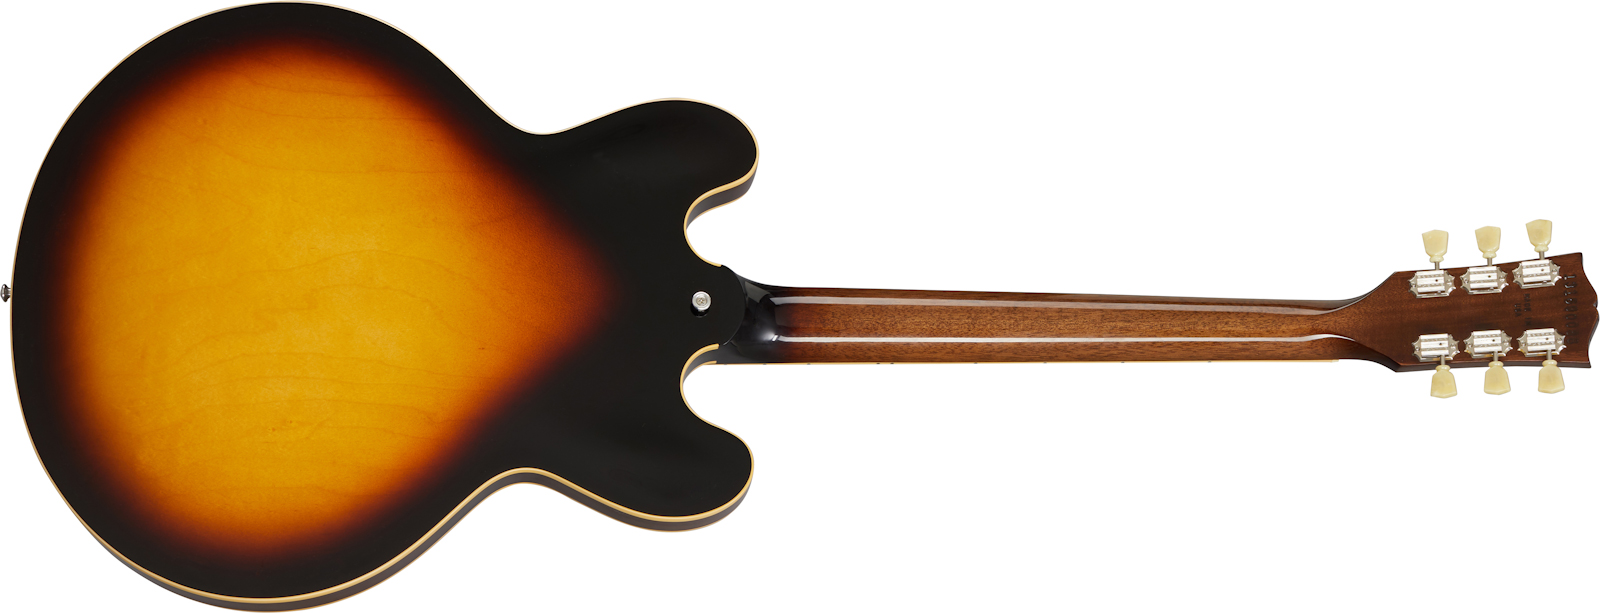 Gibson Es-335 Dot Lh Original 2020 Gaucher 2h Ht Rw - Vintage Burst - E-Gitarre für Linkshänder - Variation 1